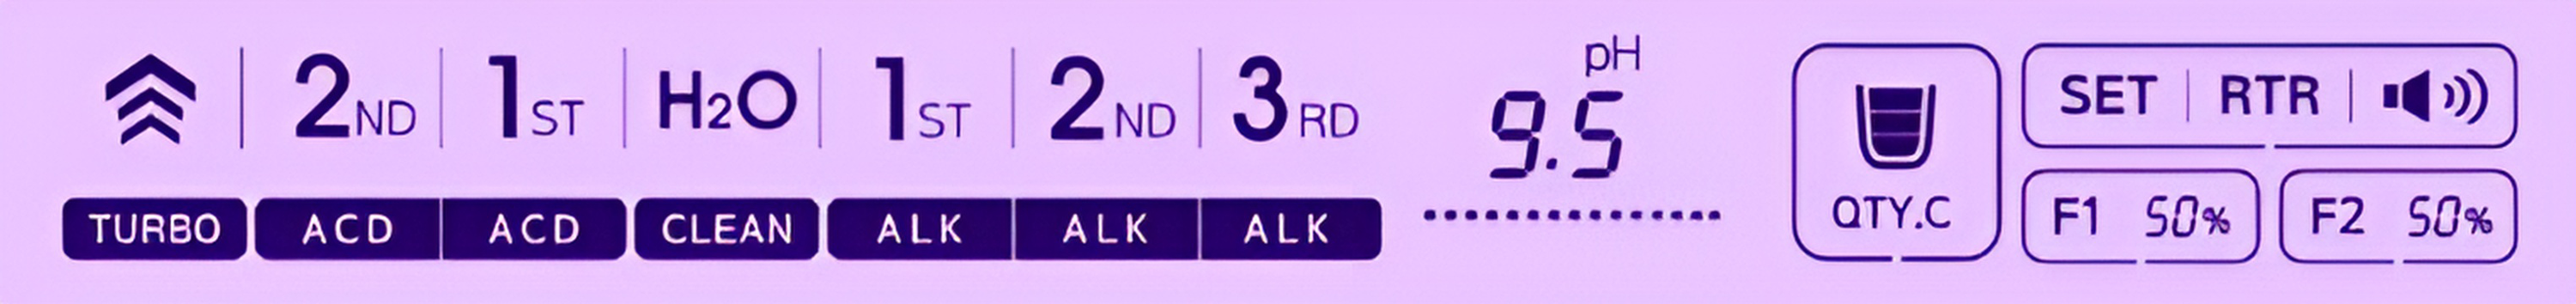 Alkaline level 3 - 9.5 pH